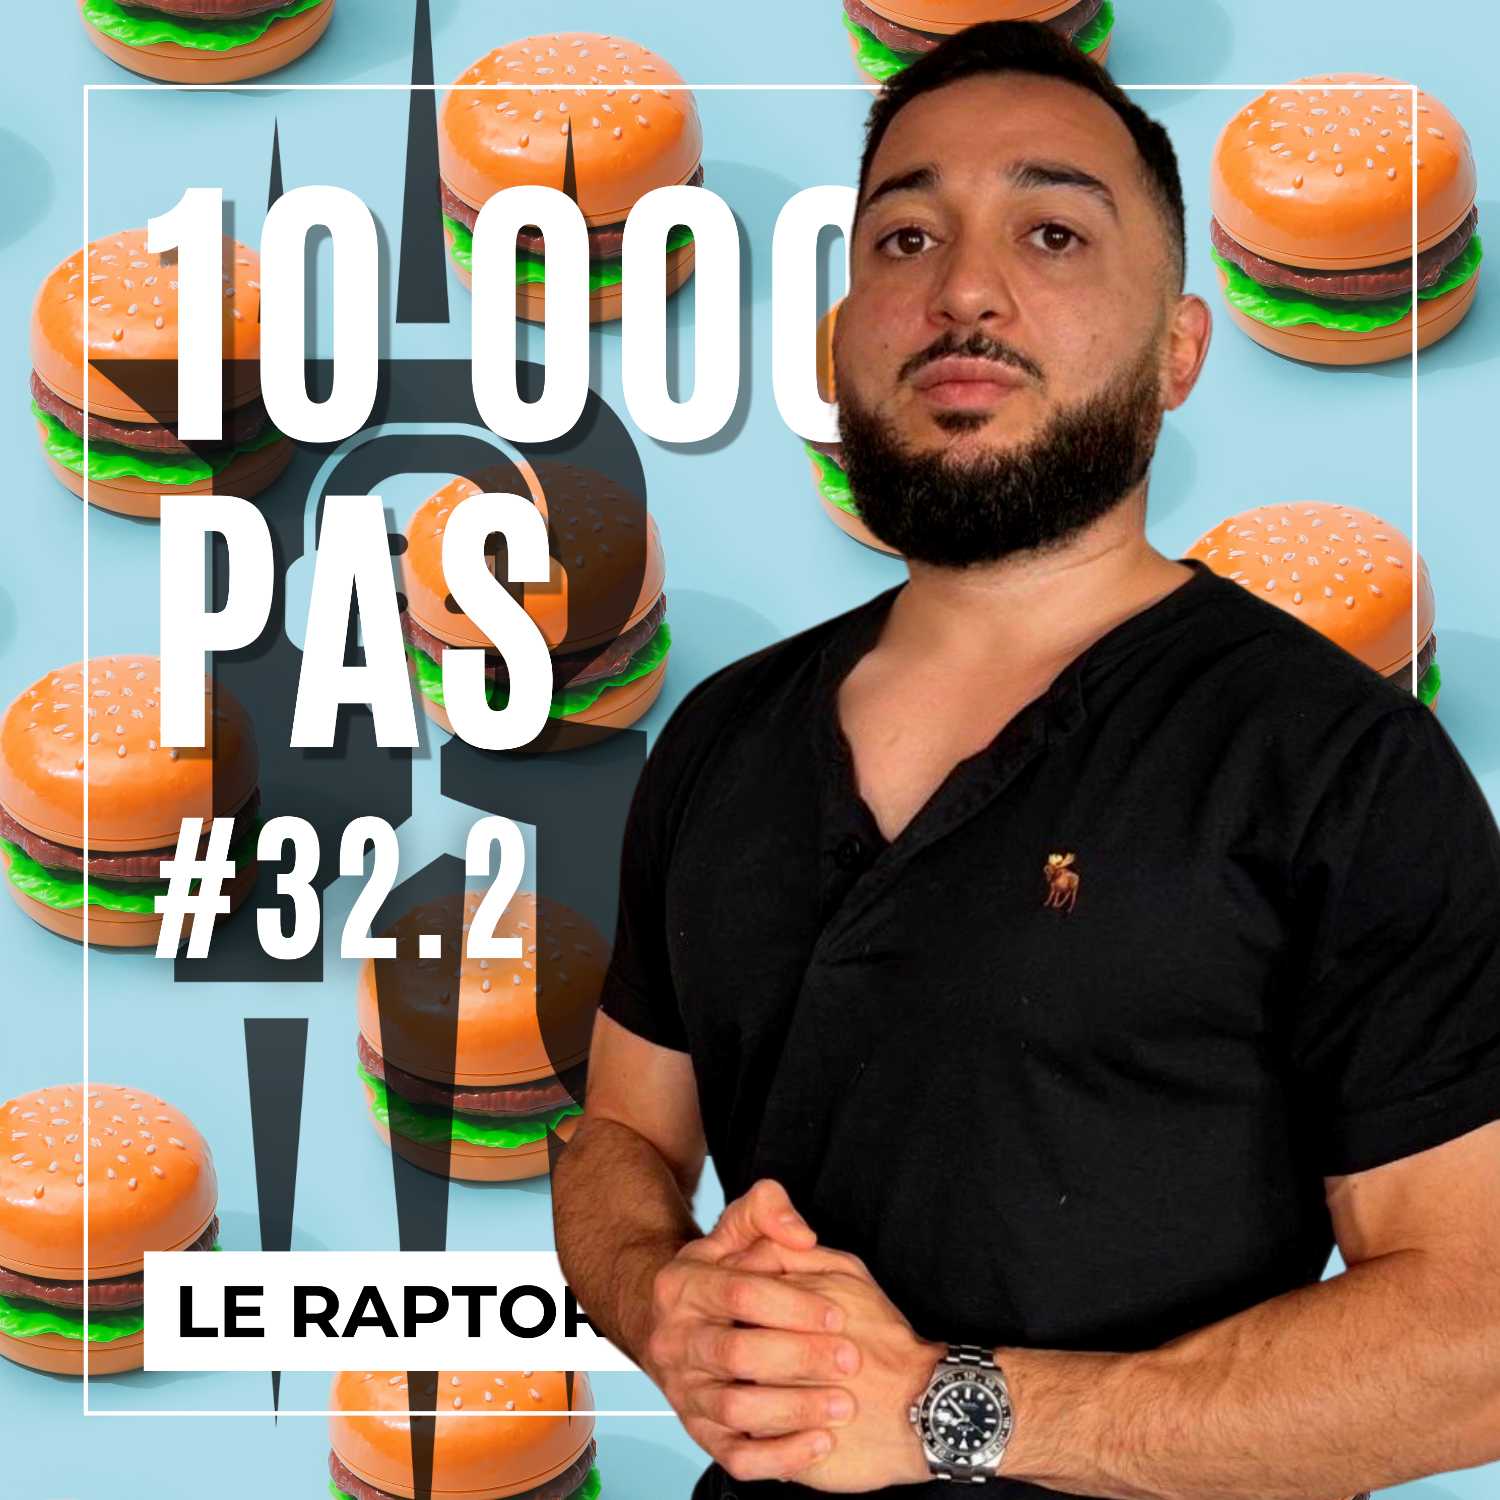 #32.2 L'E-SPORT EN NON-MIXITÉ - 10 000 PAS